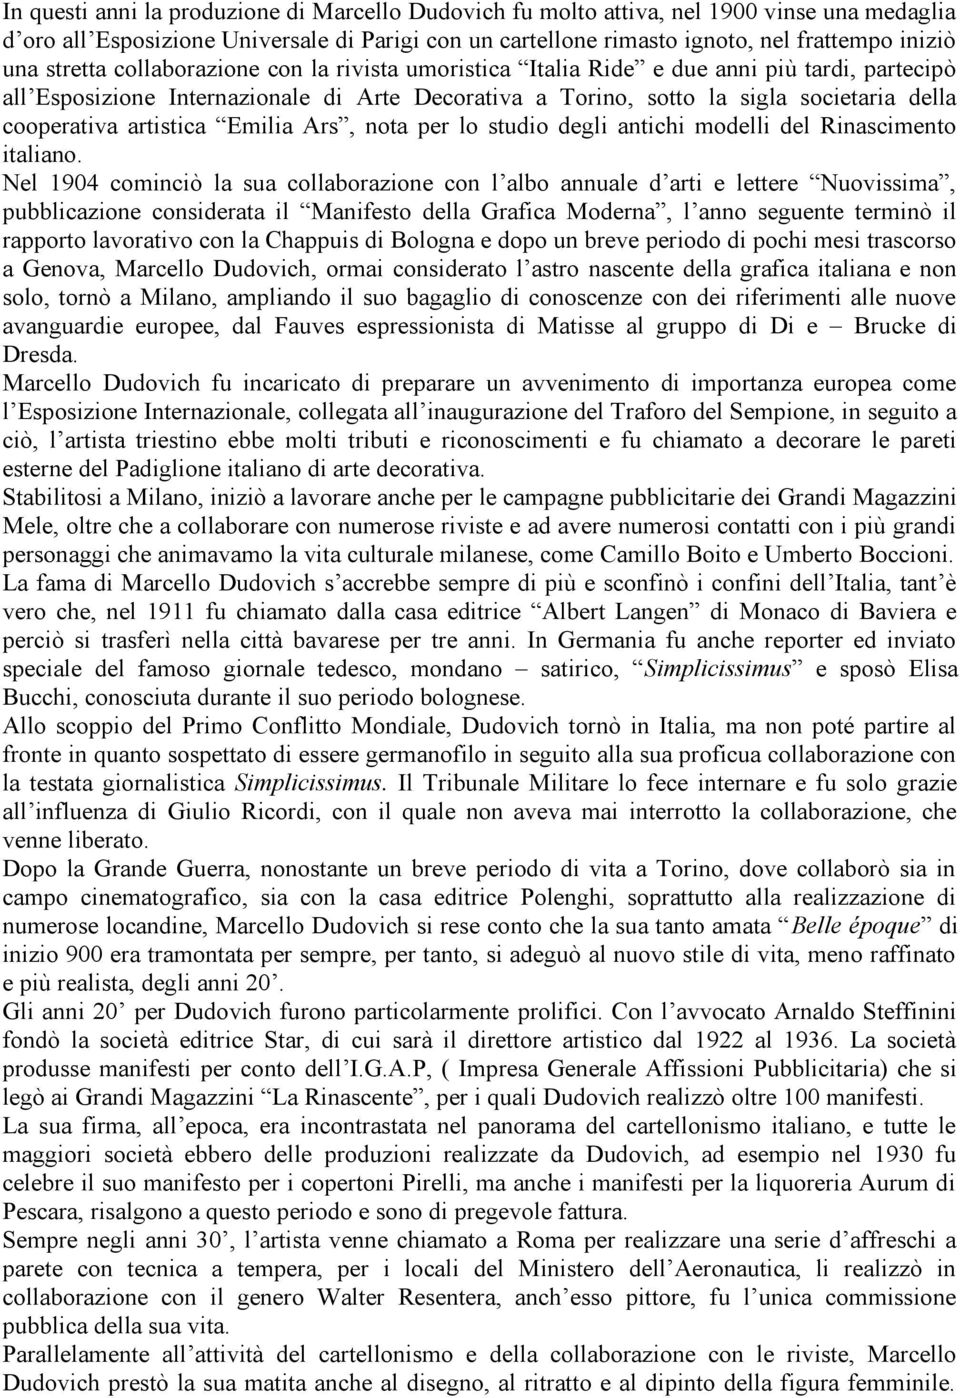 artistica Emilia Ars, nota per lo studio degli antichi modelli del Rinascimento italiano.